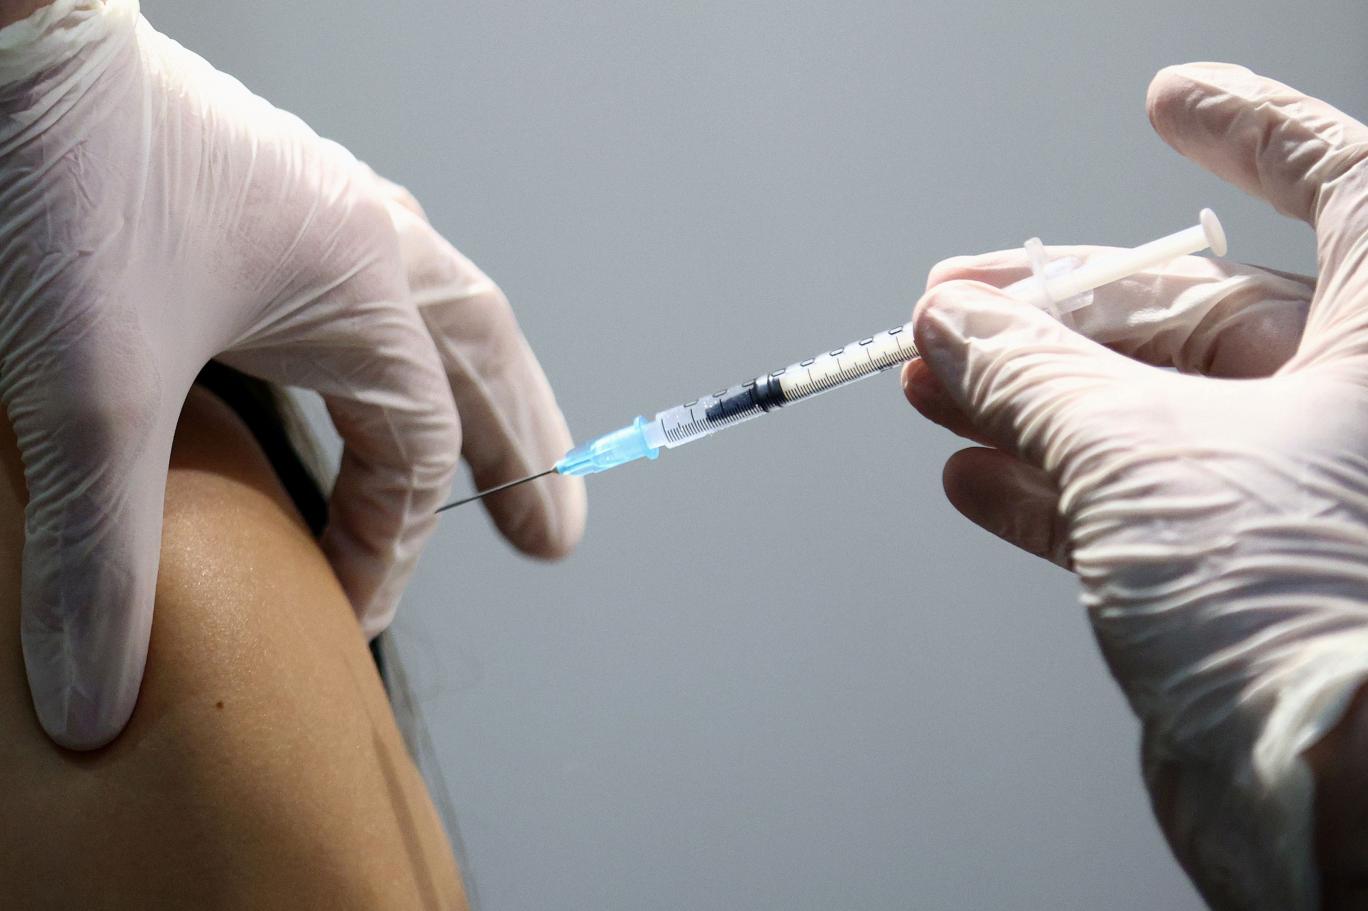 Dünya genelinde uygulanan aşı sayısı 3 milyar 880 milyon dozu aştı